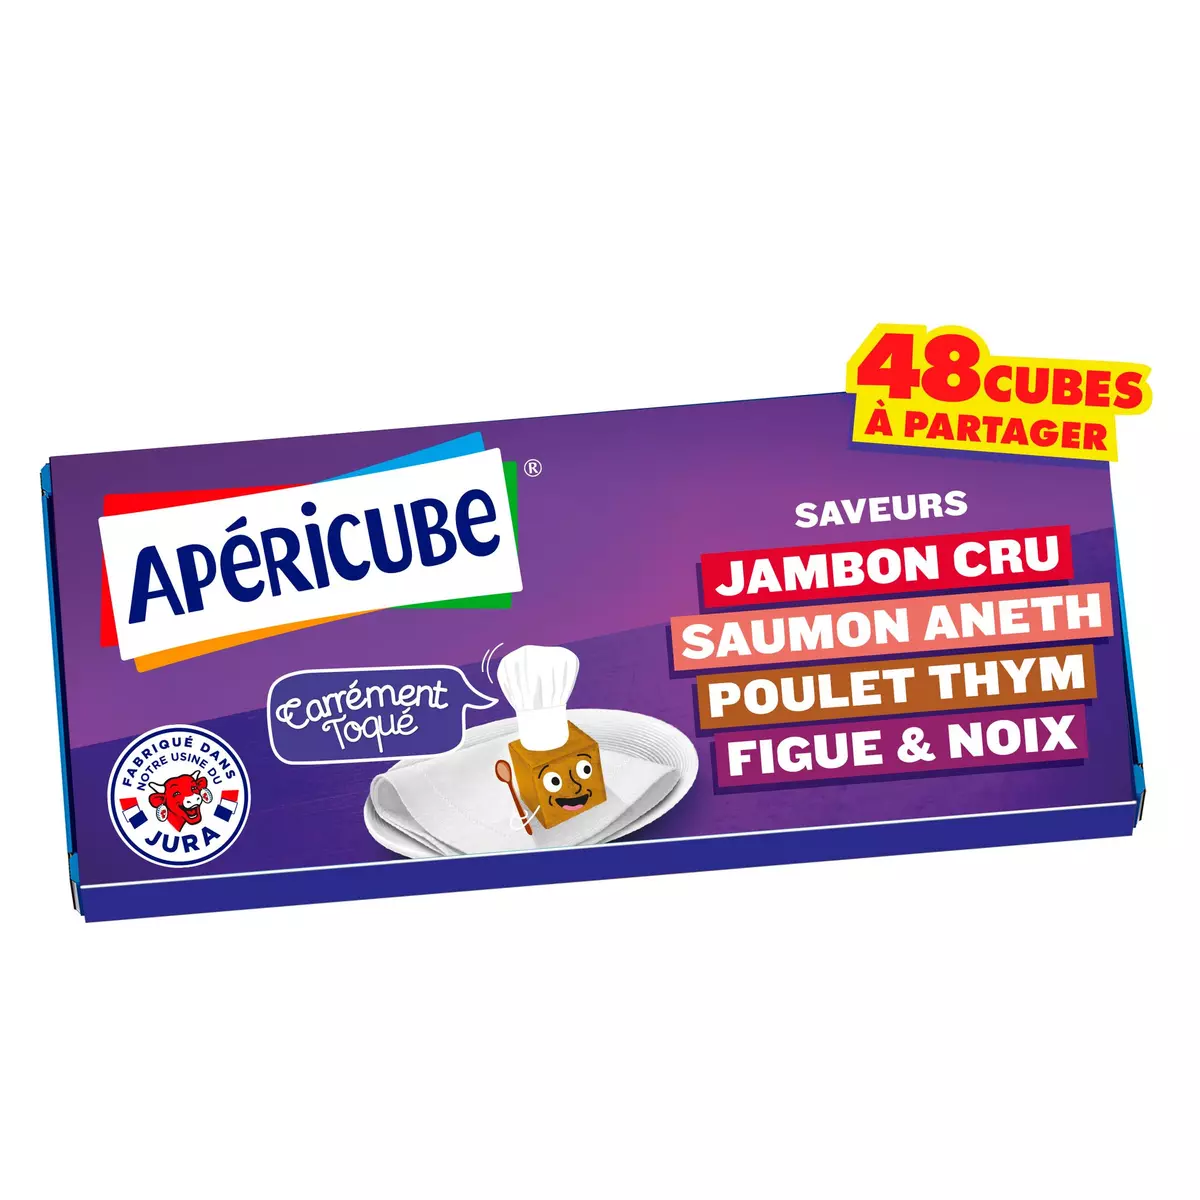 APERICUBE Cubes de fromage apéritif Carrément Toqué 48 cubes 250g